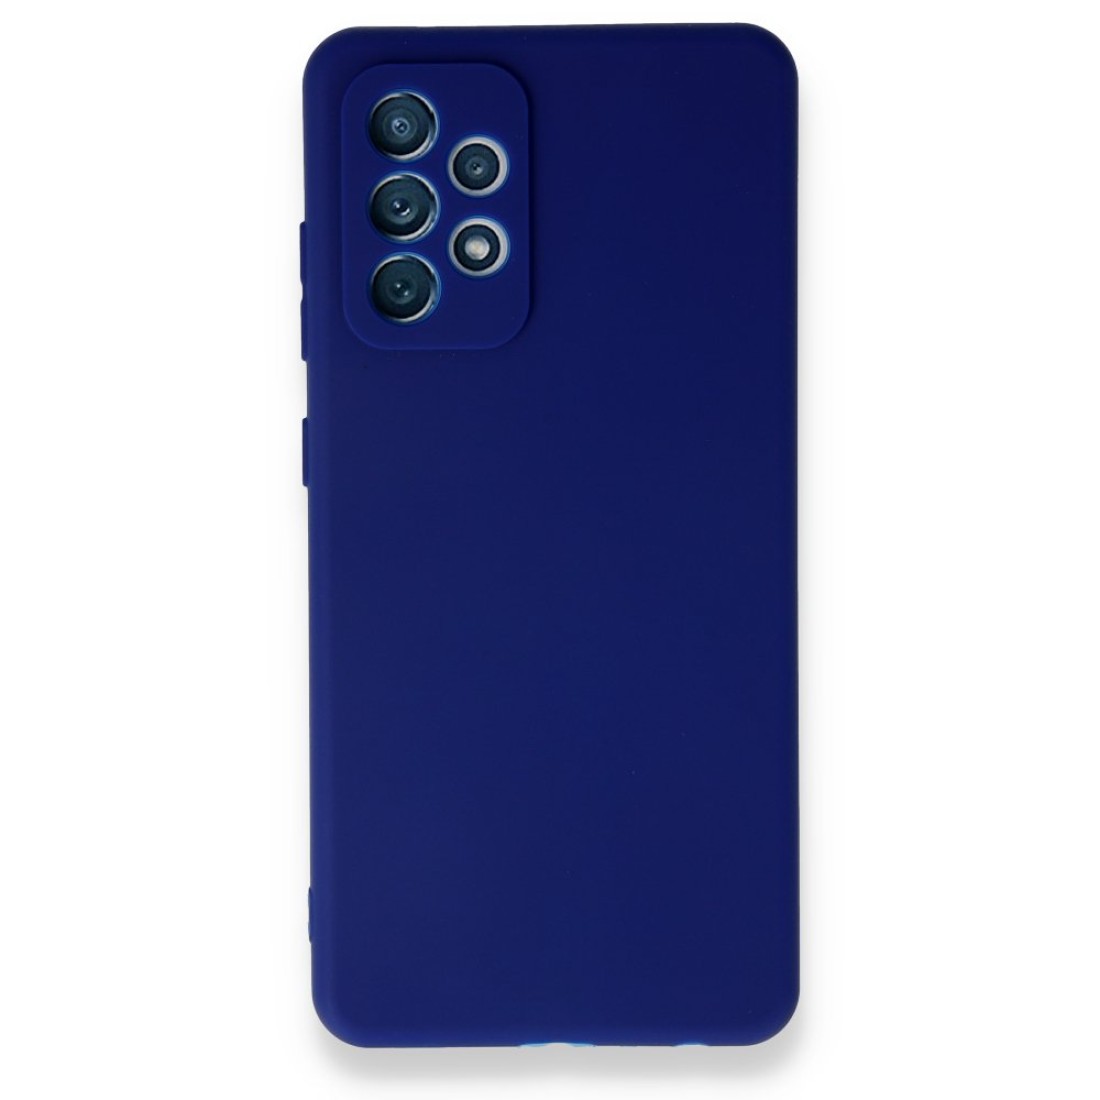 Samsung Galaxy A52 Kılıf First Silikon - Mavi